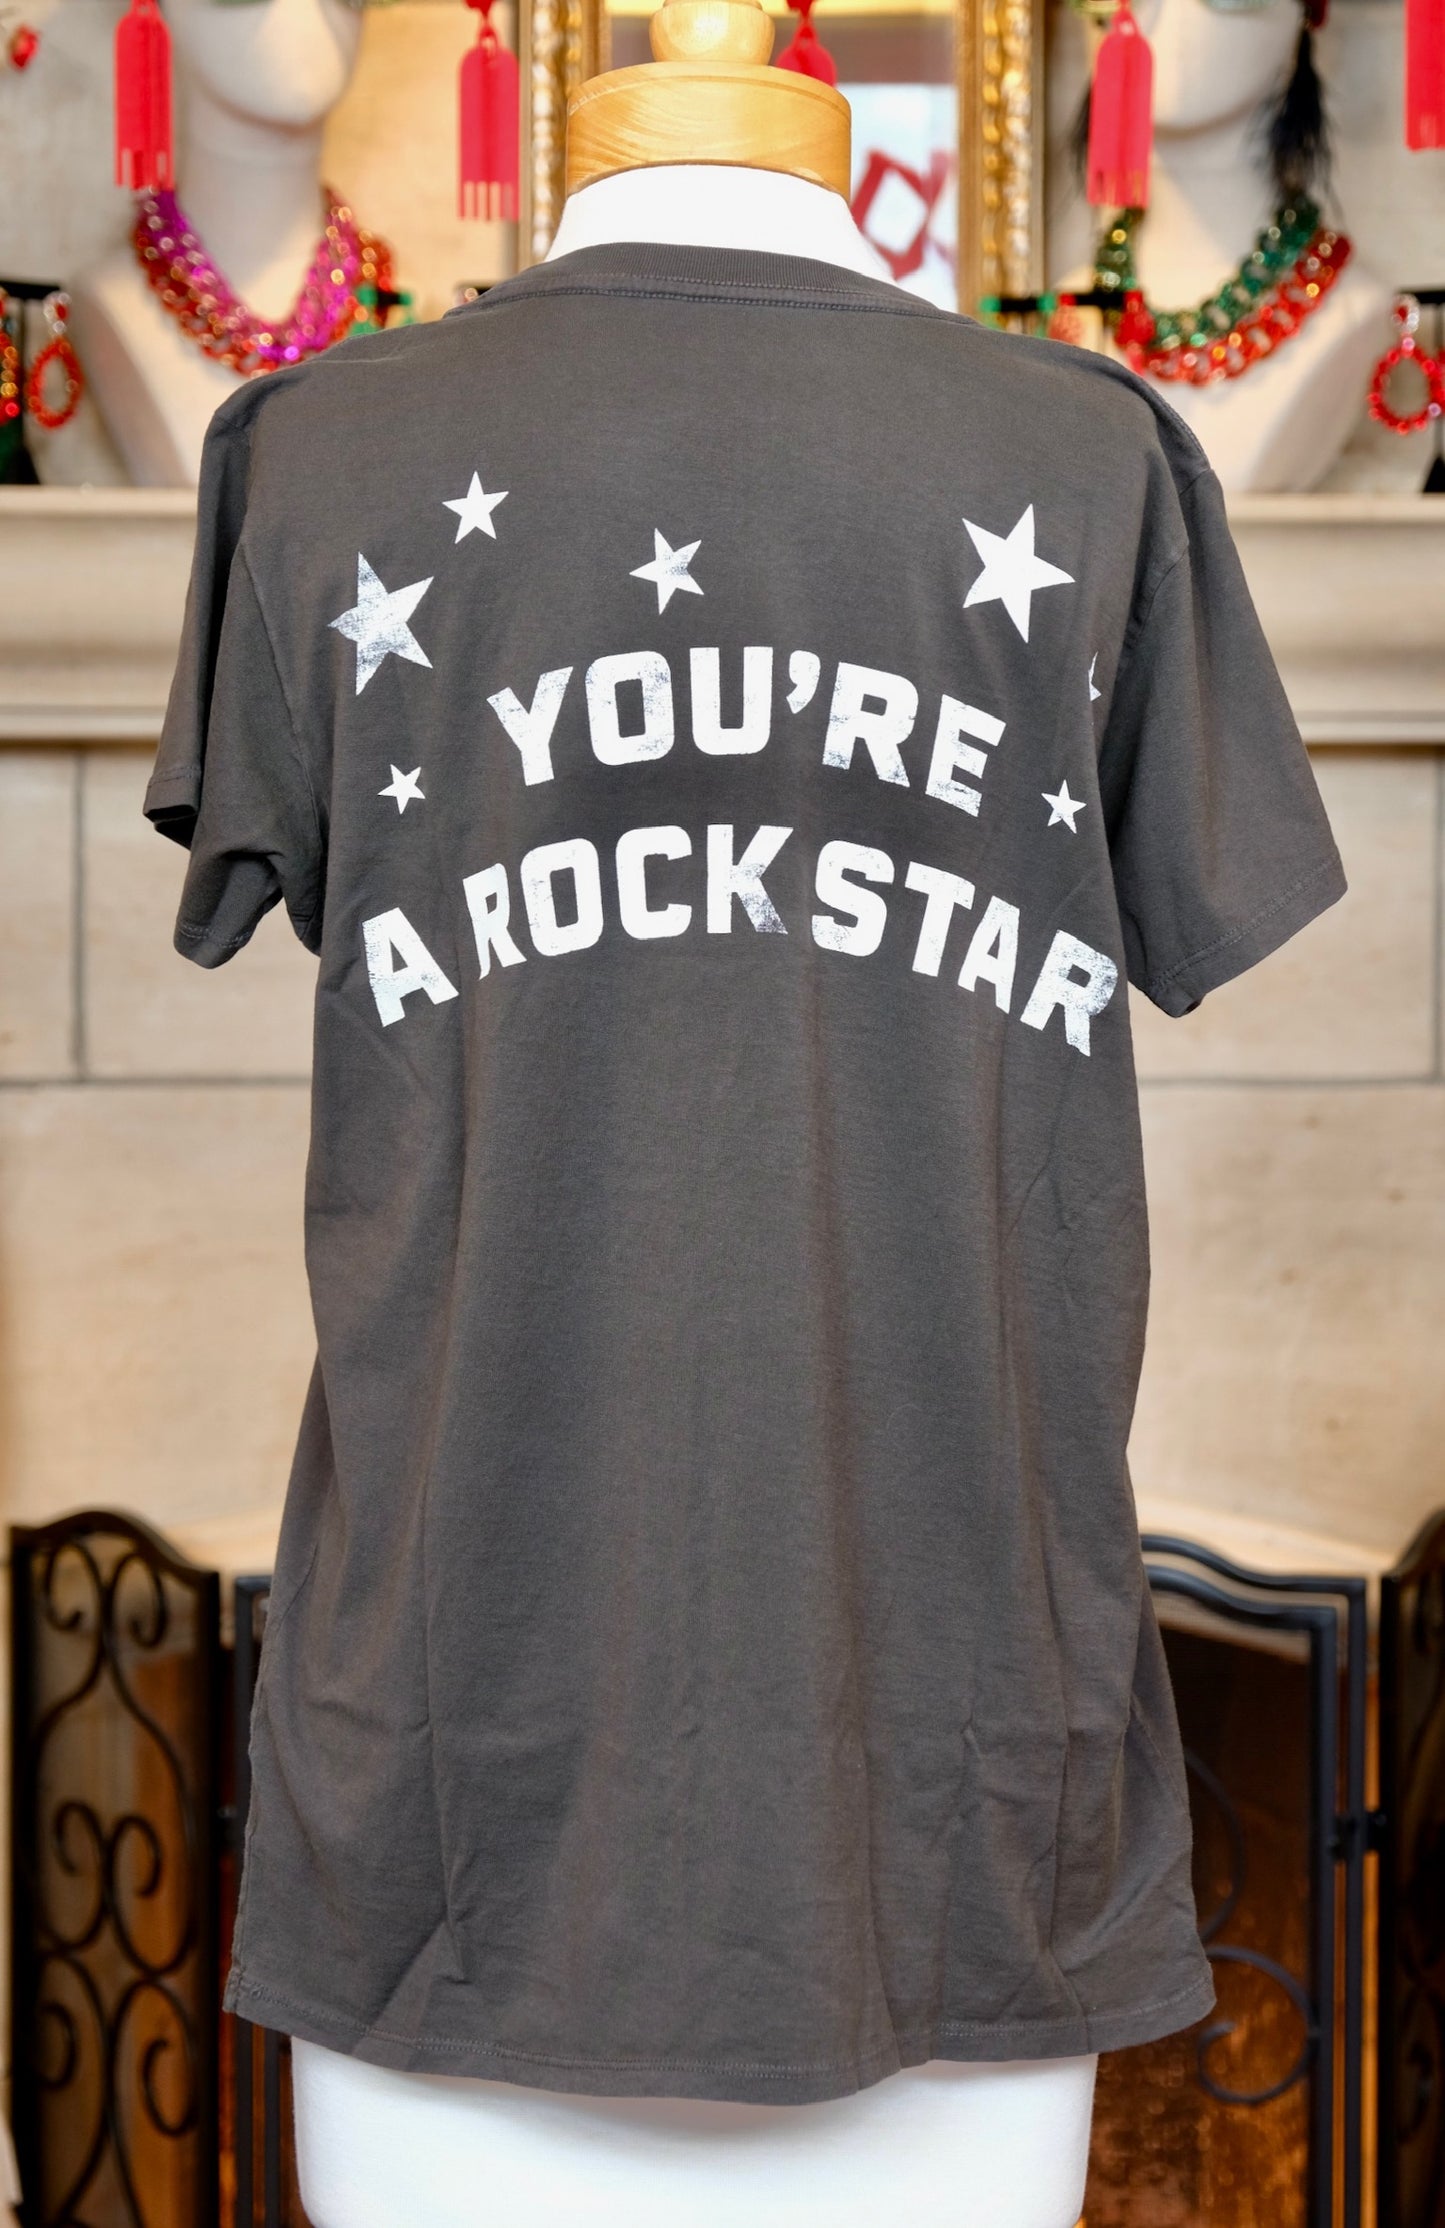 Made of Stars T-Shirt